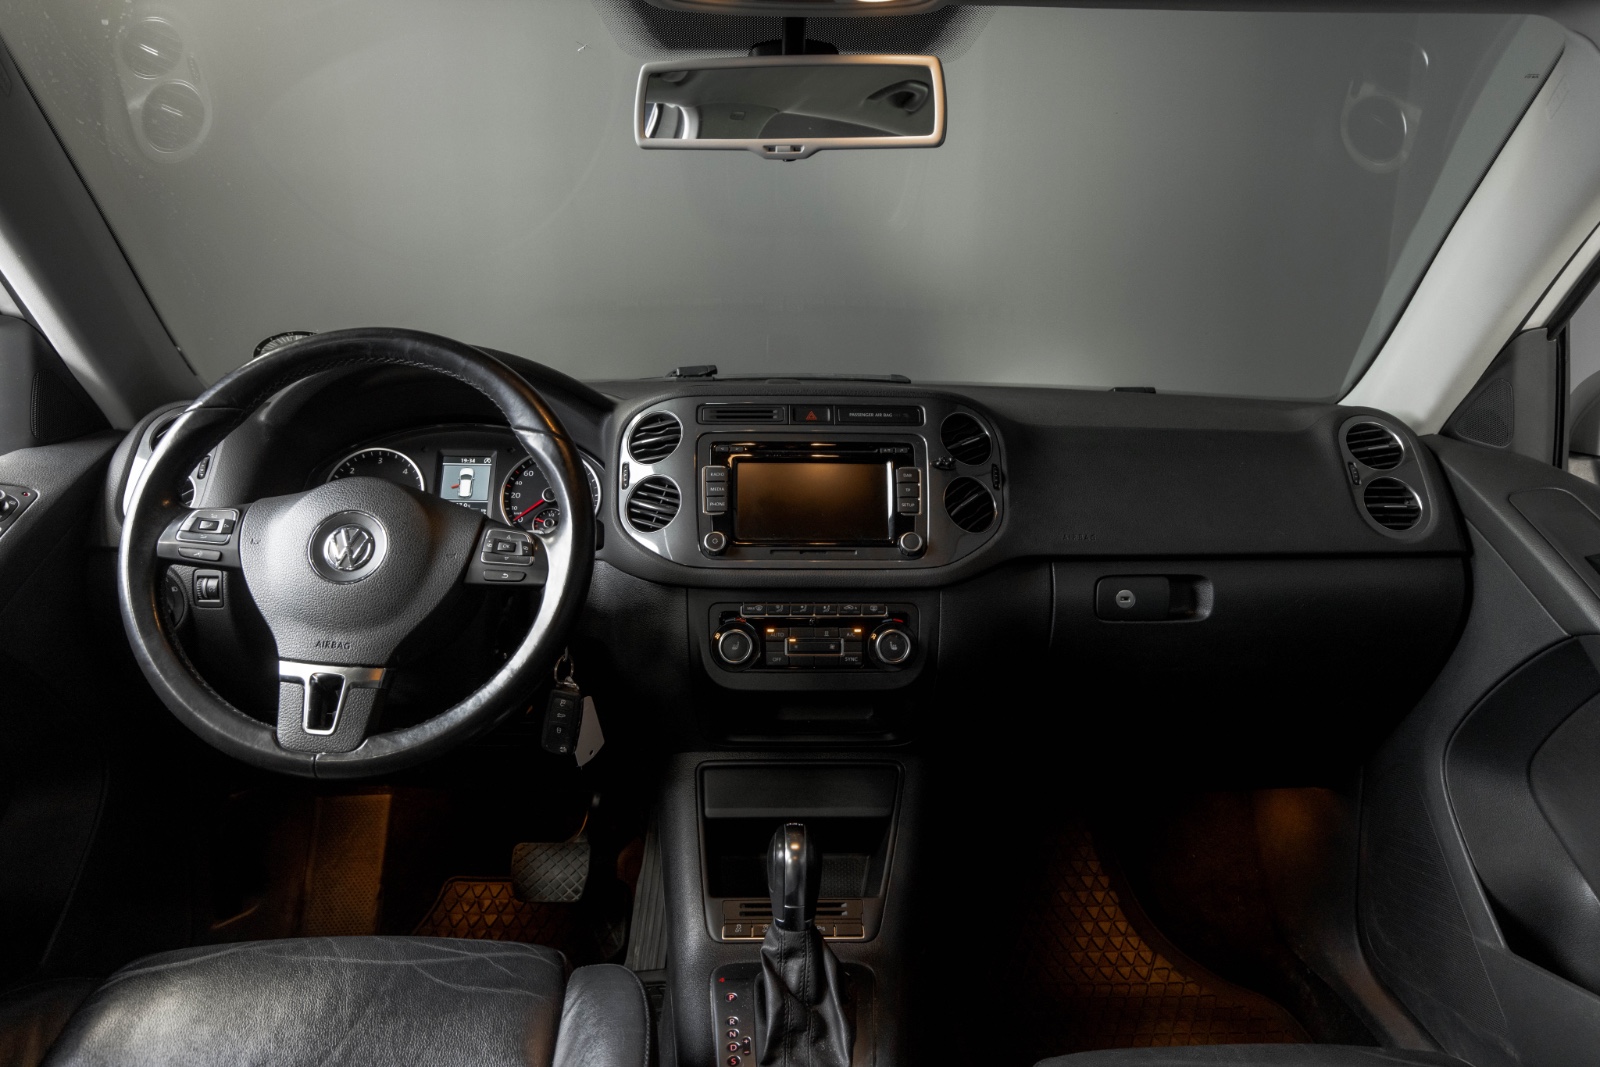 Hovedbilde av Volkswagen Tiguan 2013